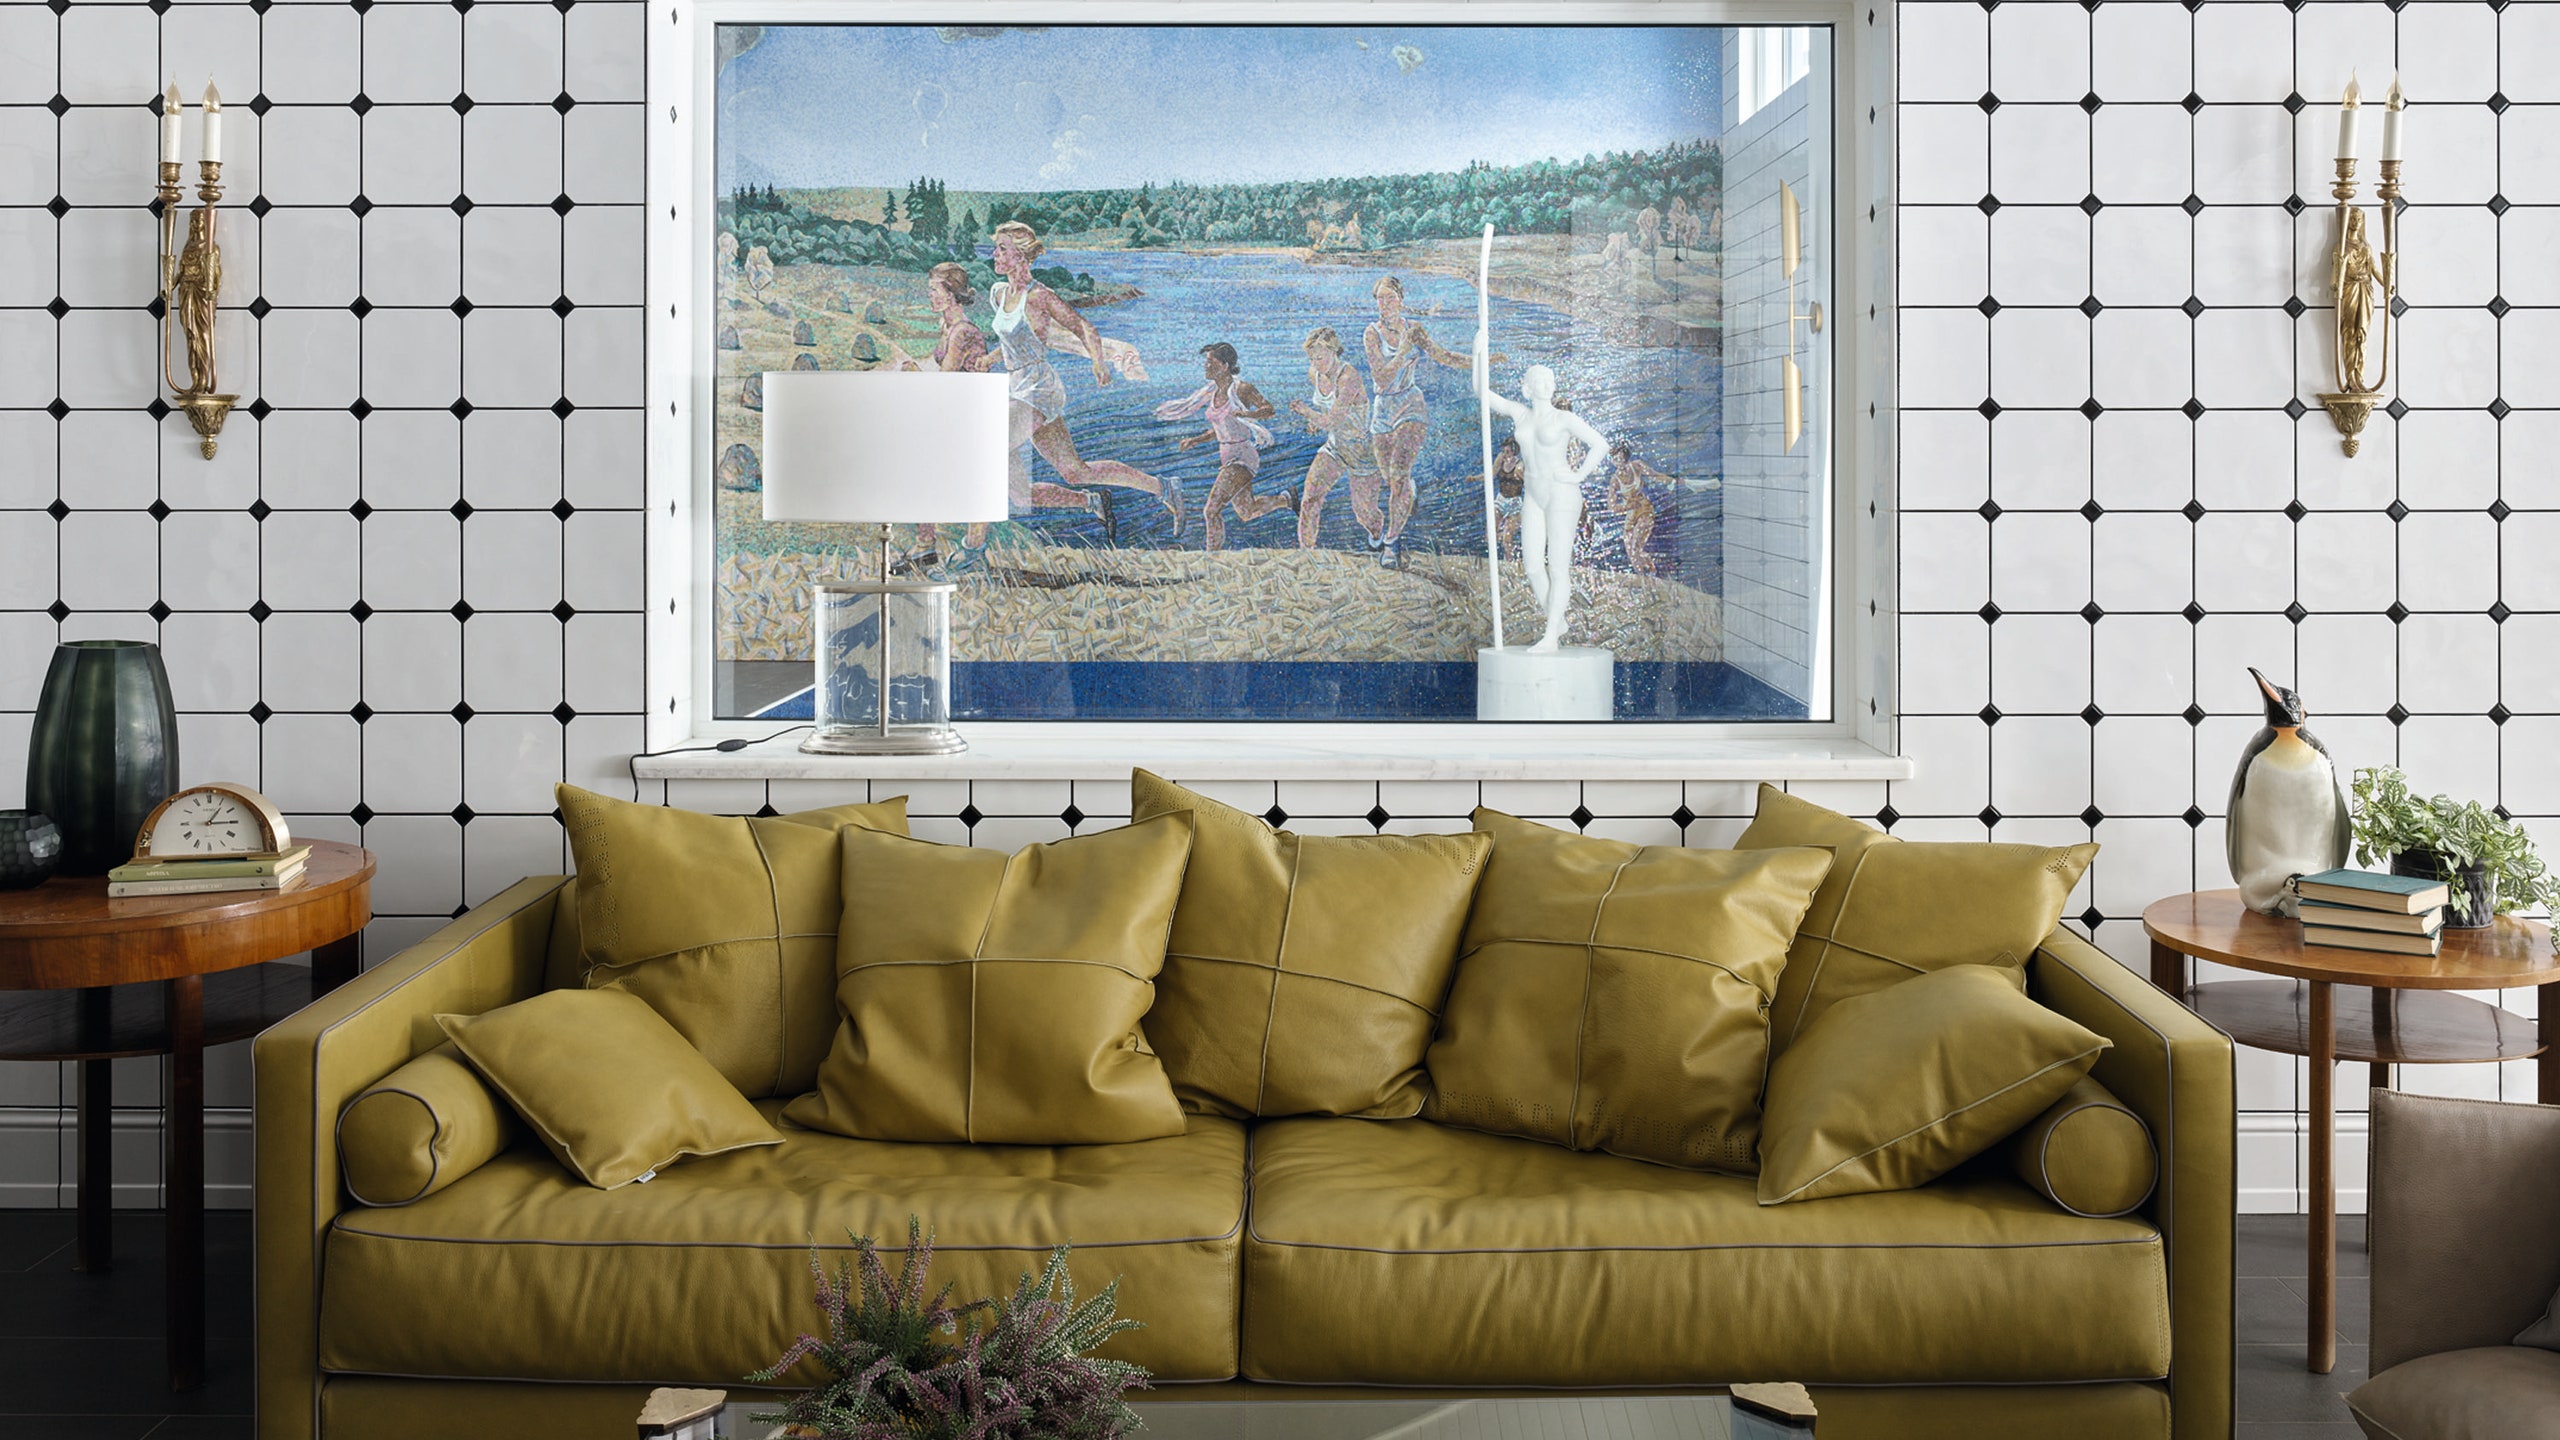 Гостиная. Кожаный диван куплен в “Гранде” журнальные столики по дизайну Индржиха Галабалы 1930е годы из галереи “Селезень”.